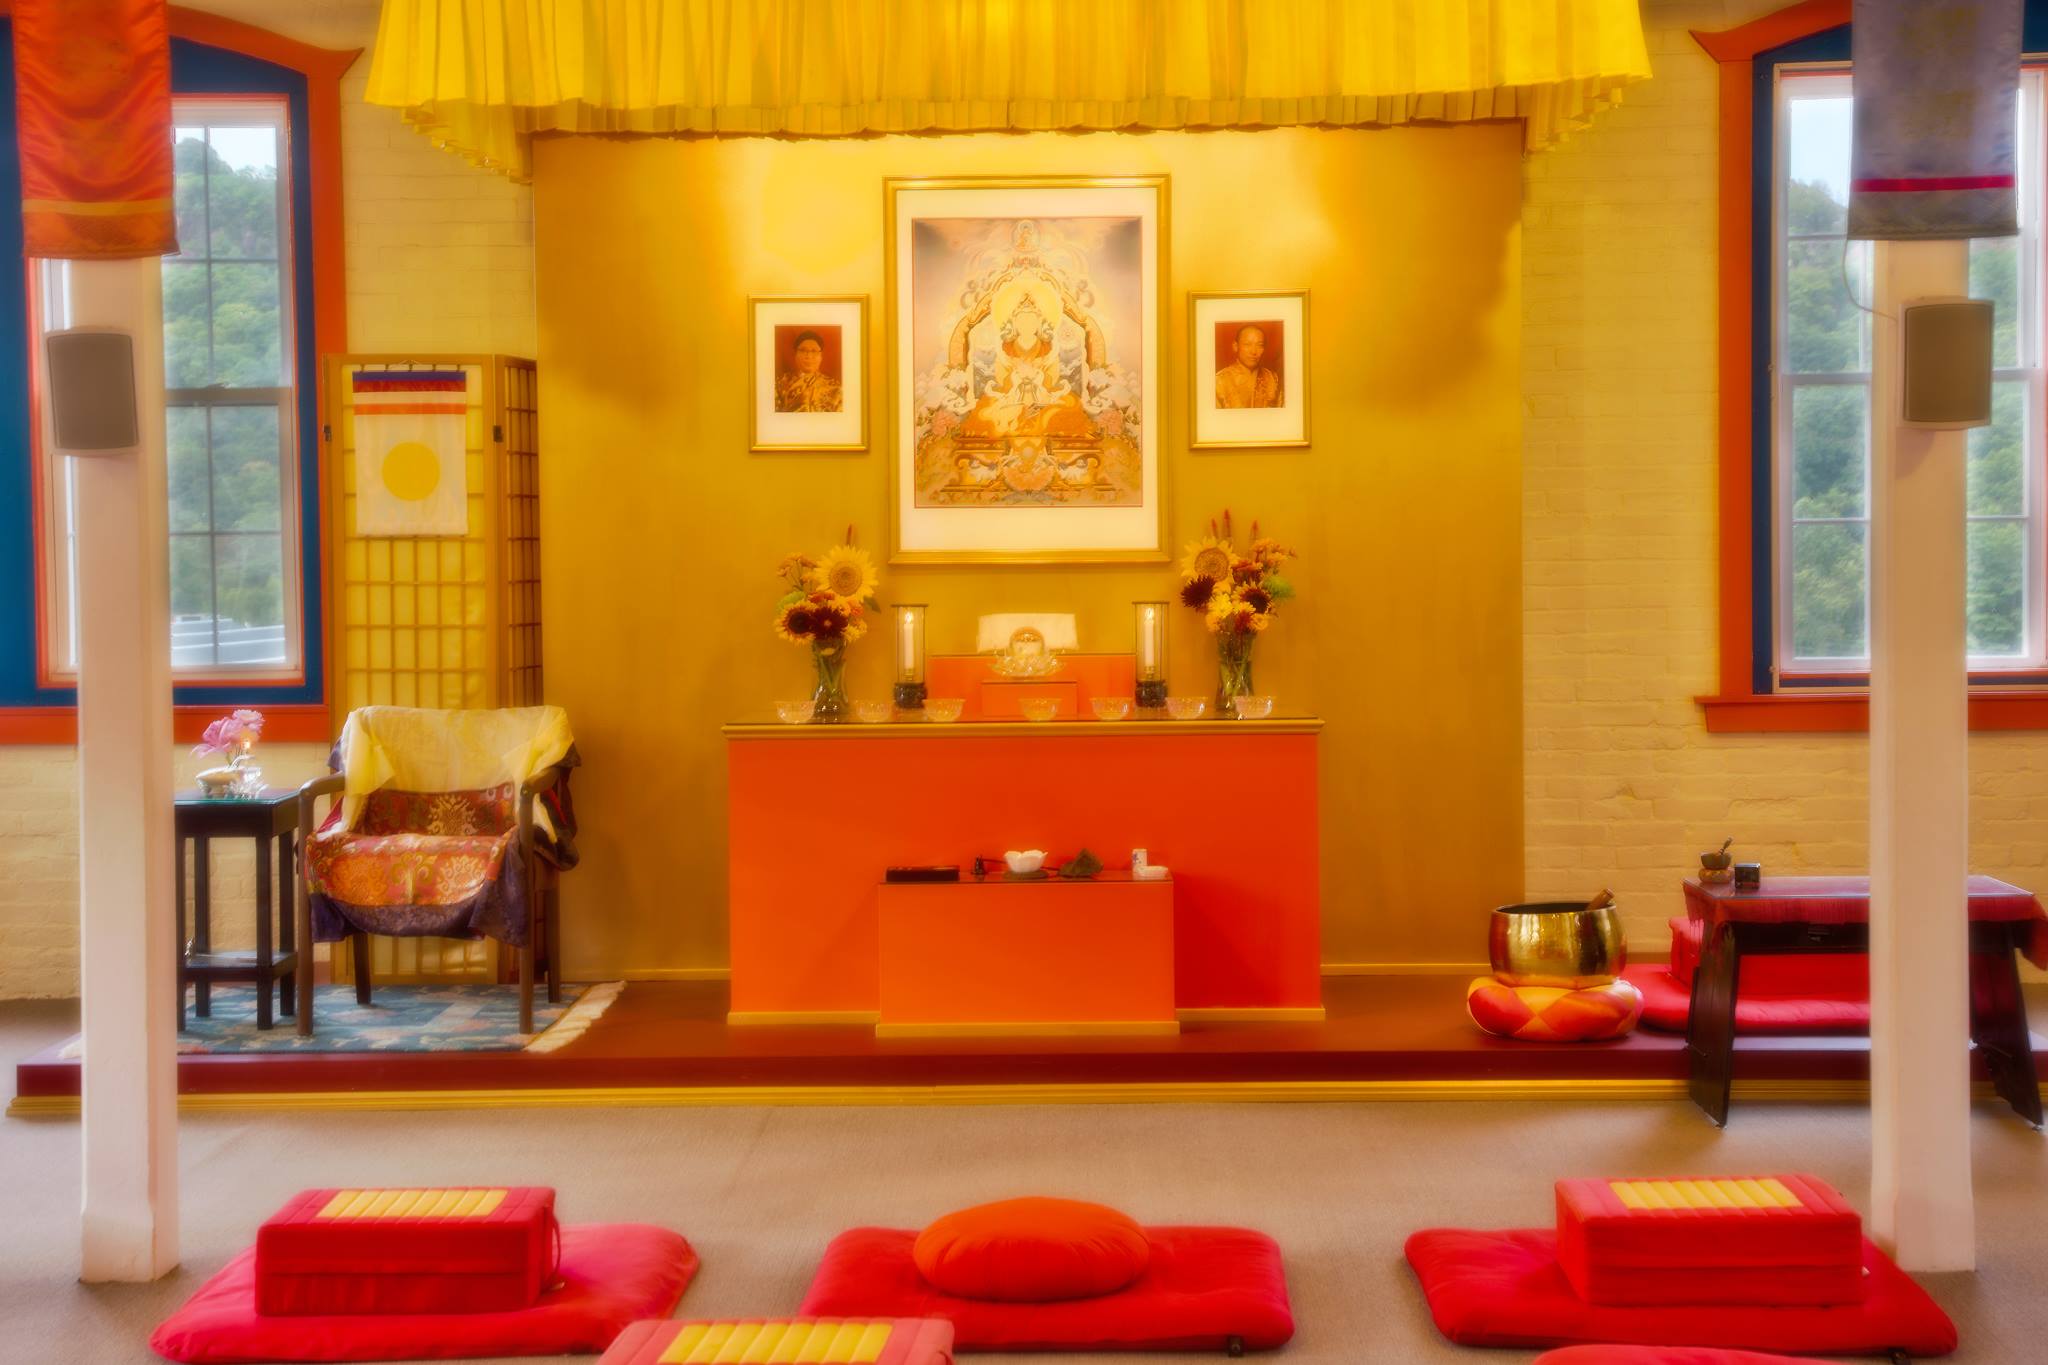 Shambhala Meditation Center Image